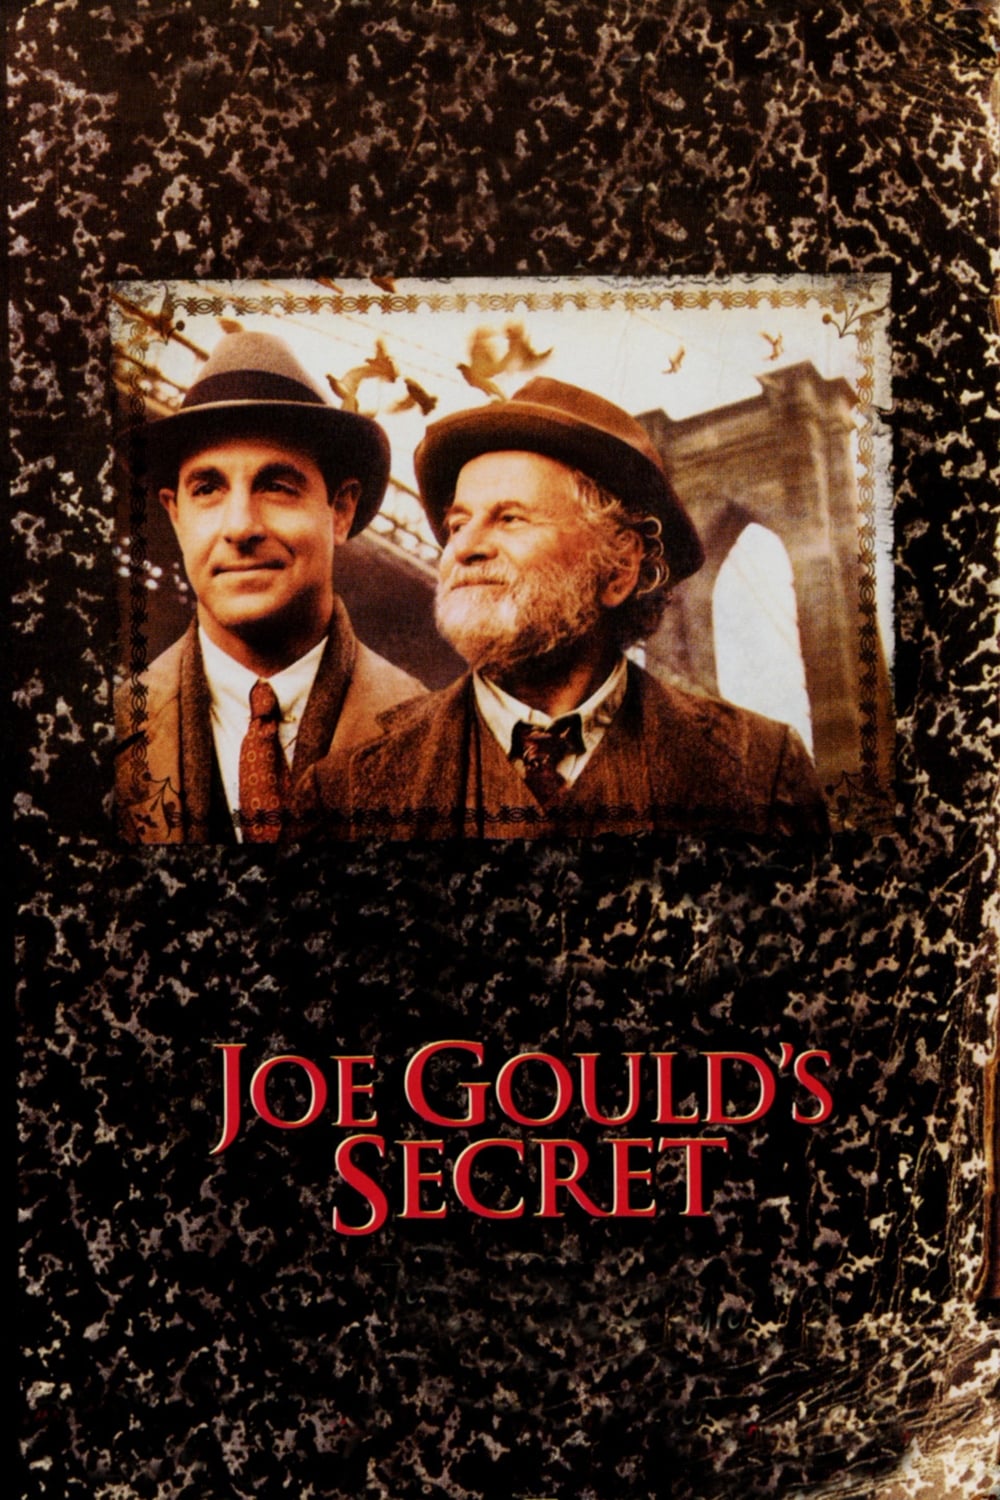 Joe Goulds Geheimnis (2000)